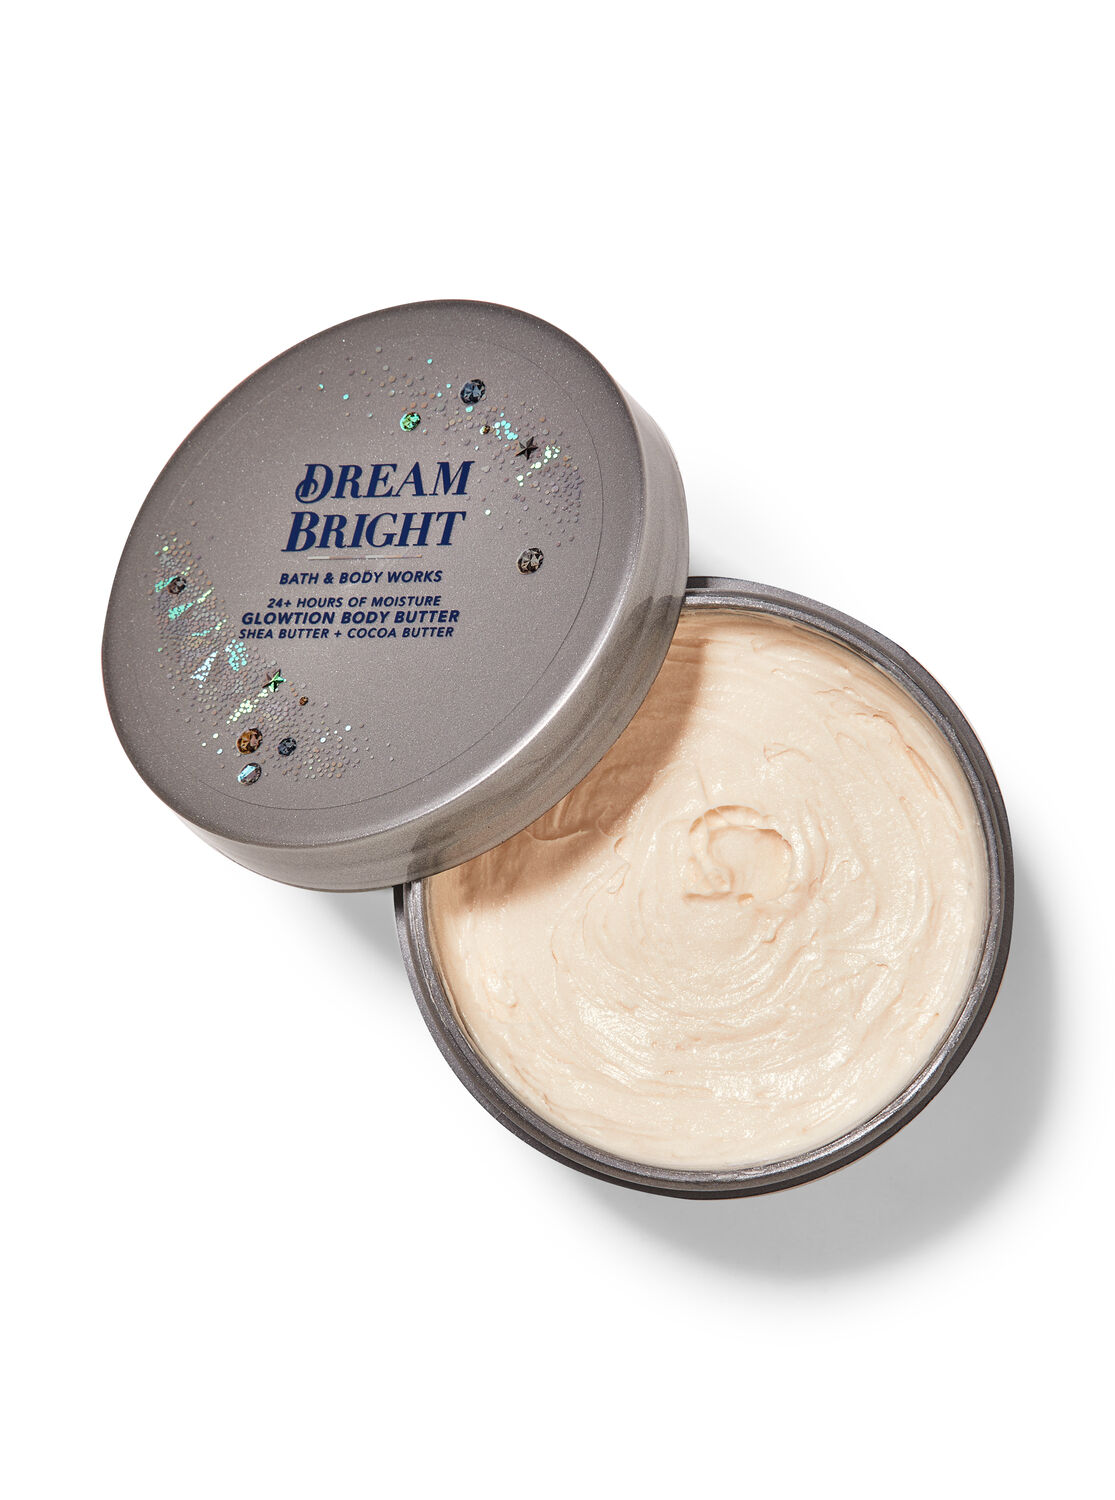 Dream Bright Glowtion Body Butter | Bath & Works